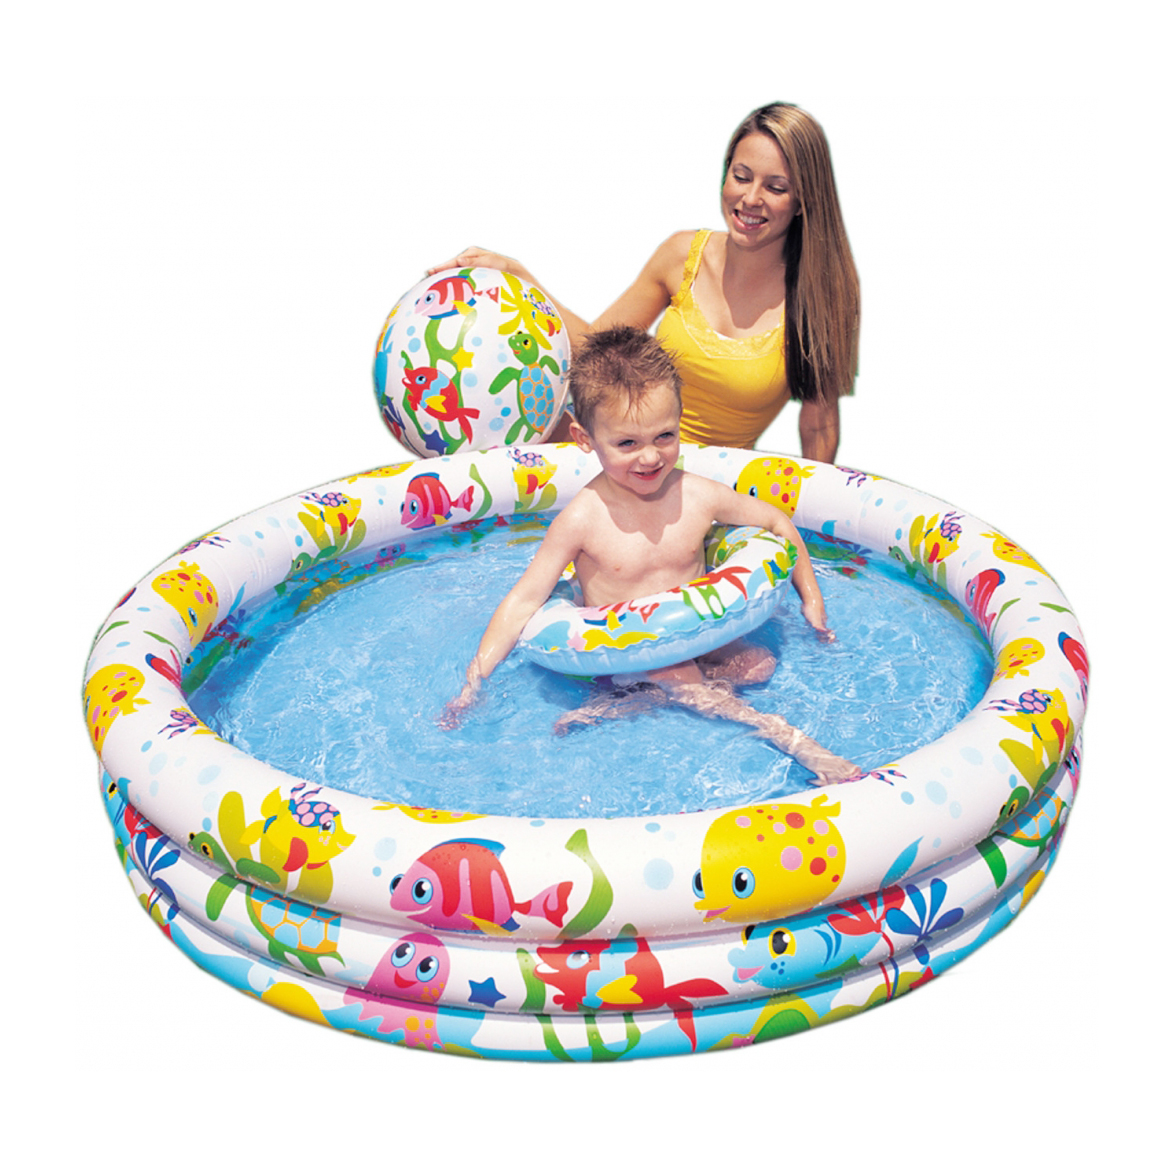 Bể bơi tròn 3 tầng kèm phụ kiện bóng hơi và phao bơi cho bé trai và bé gái loại to, đường kính 1,32m, chất liệu nhựa PVC cao cấp bền đẹp, đáy chống trơn SALE XẢ KHO